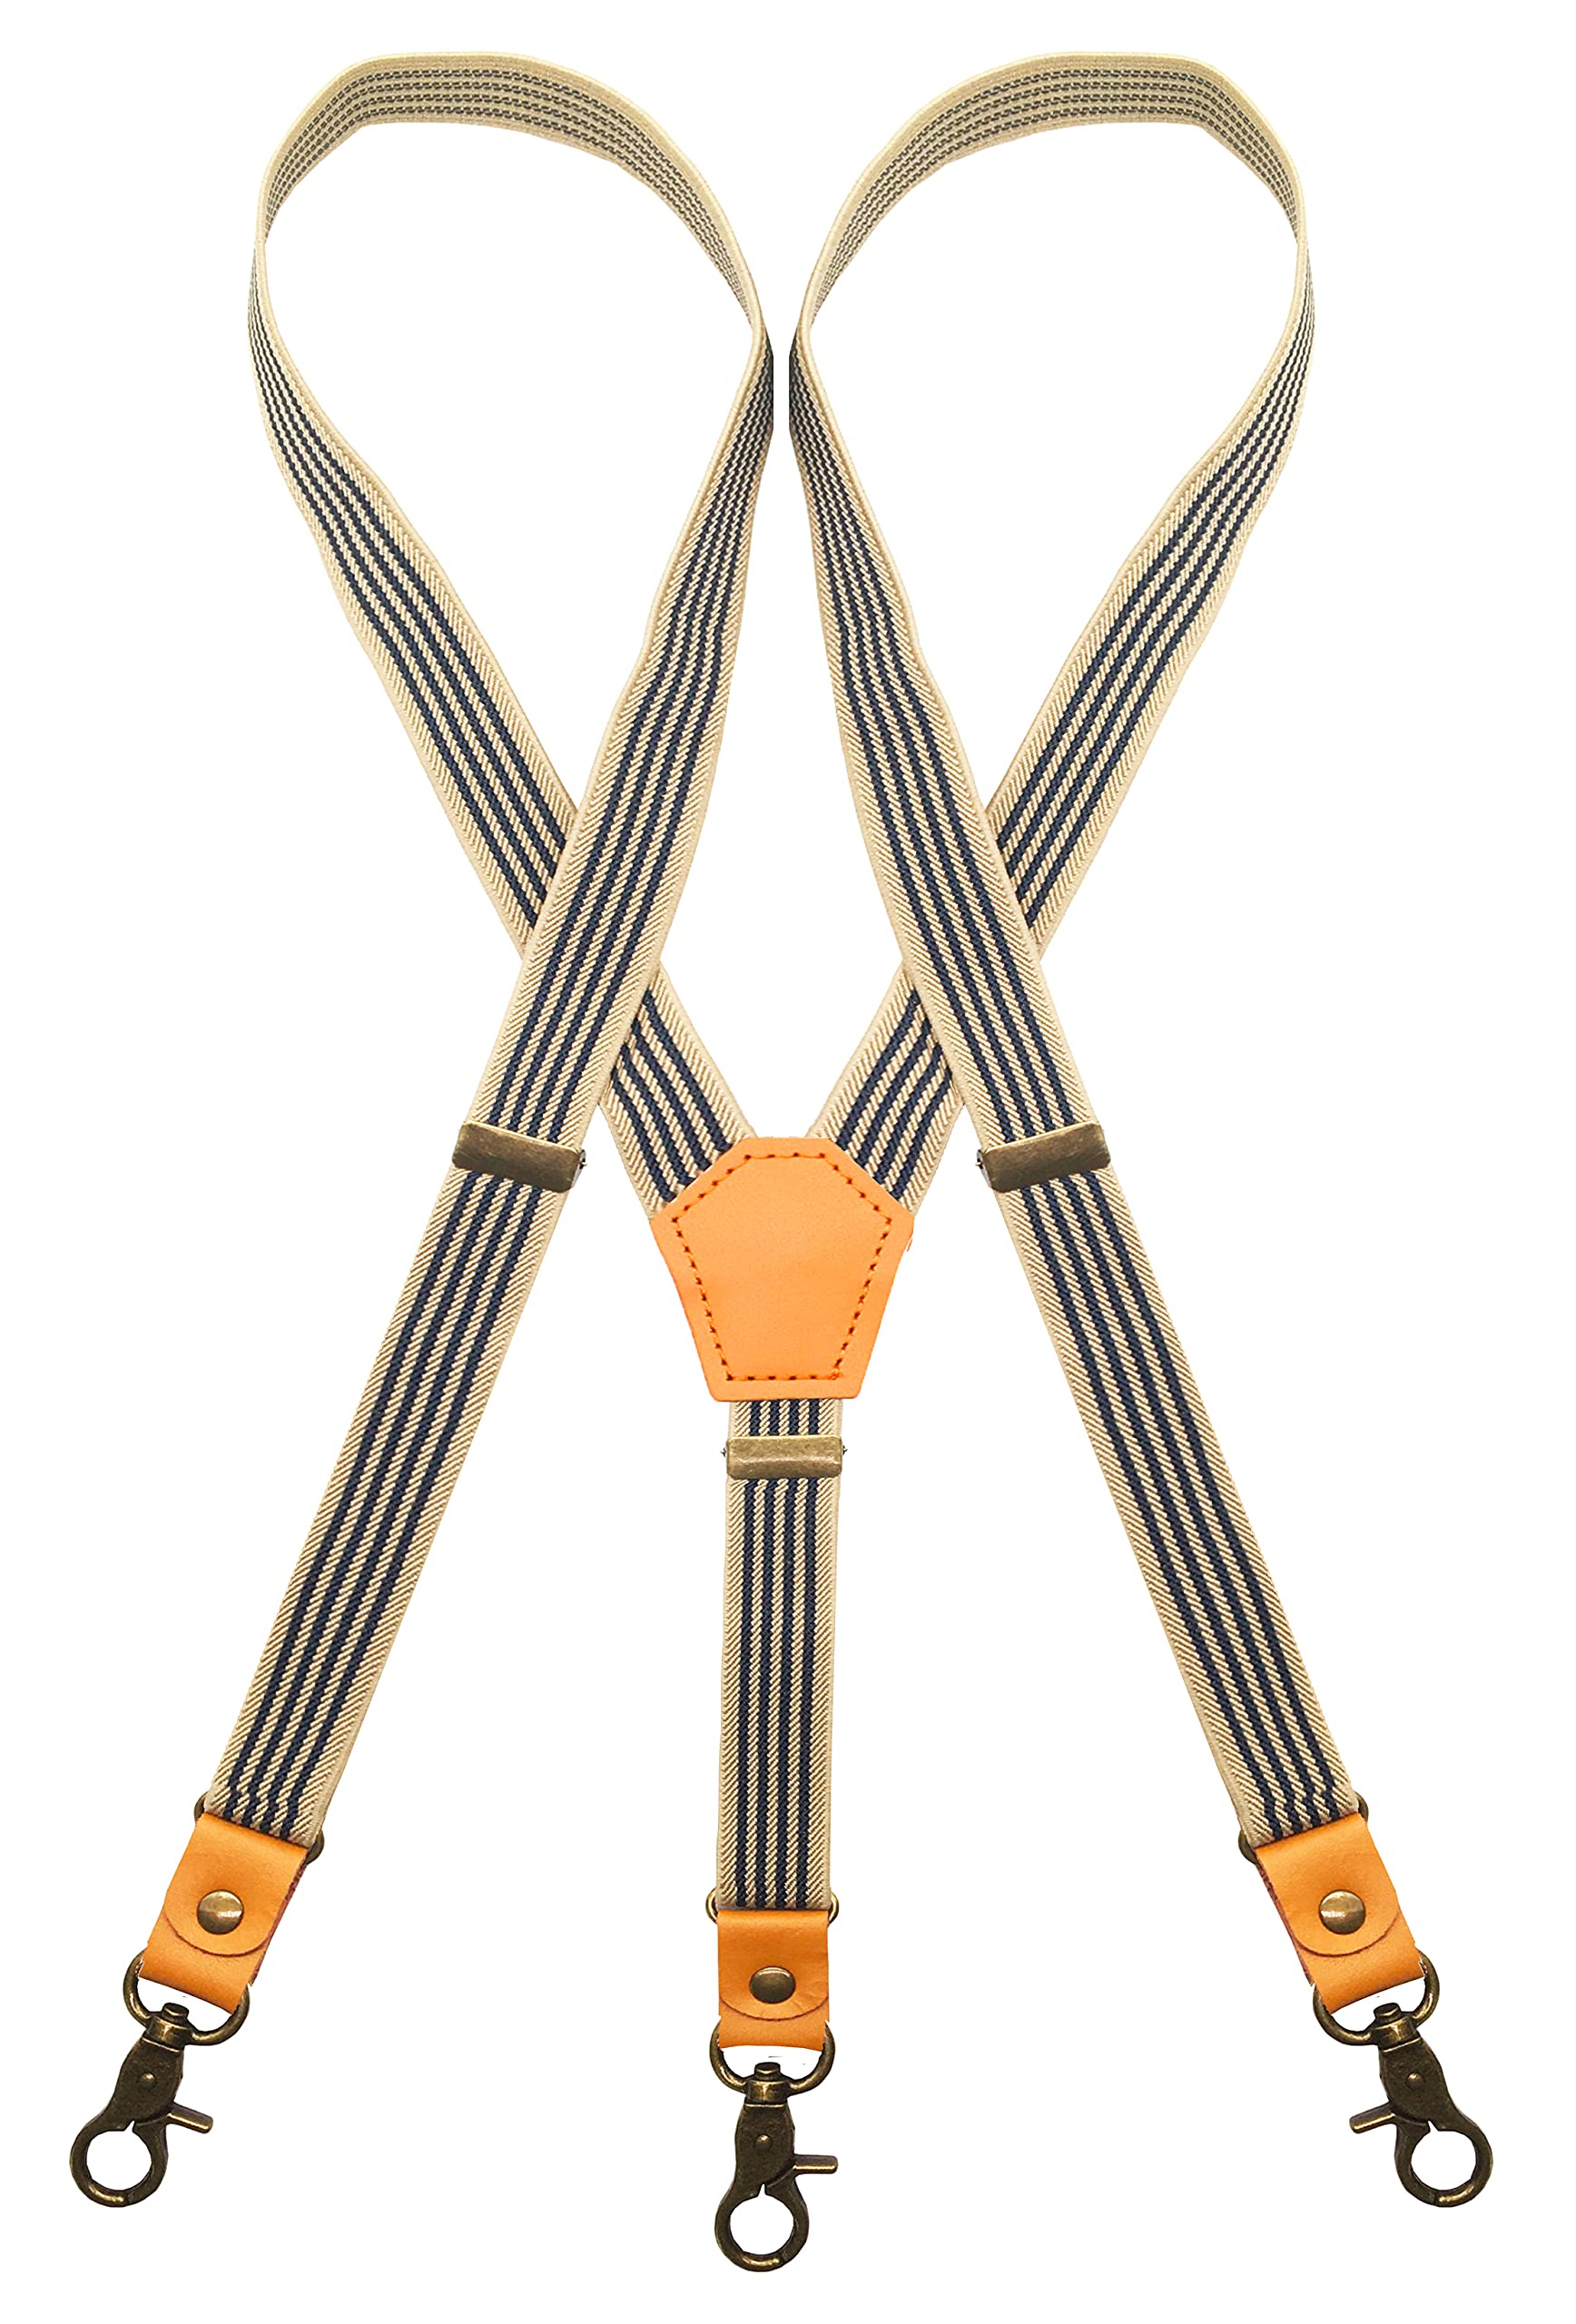 Mua MENDENG Adjustable Suspenders for Men Bronze Metal Clips